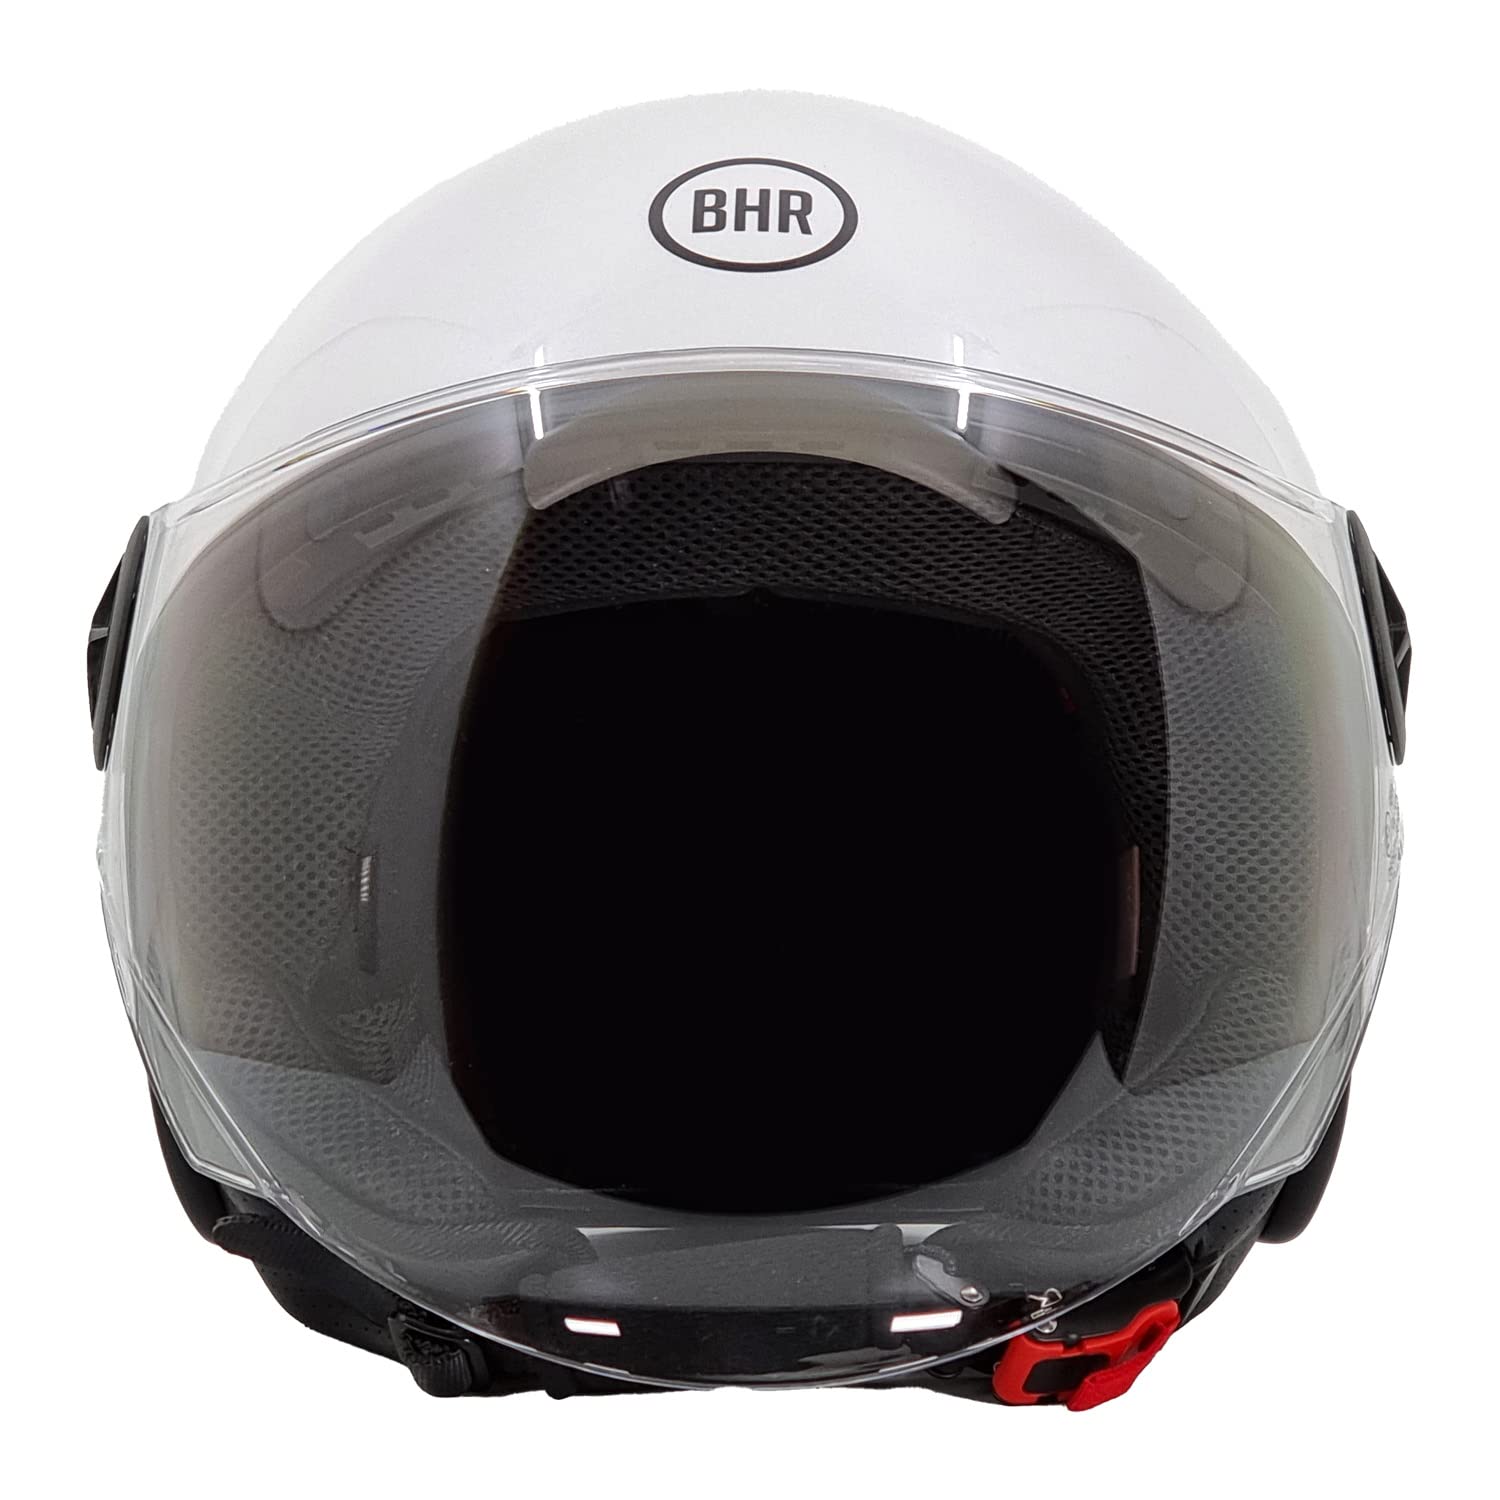 BHR Helm Demi-Jet 832 MINIMAL, Scooter Helm Zulassung ECE 22.06 Leicht und kompakt, ideal für die Stadt und unter der Sitzbank, Weiß, XL von BHR